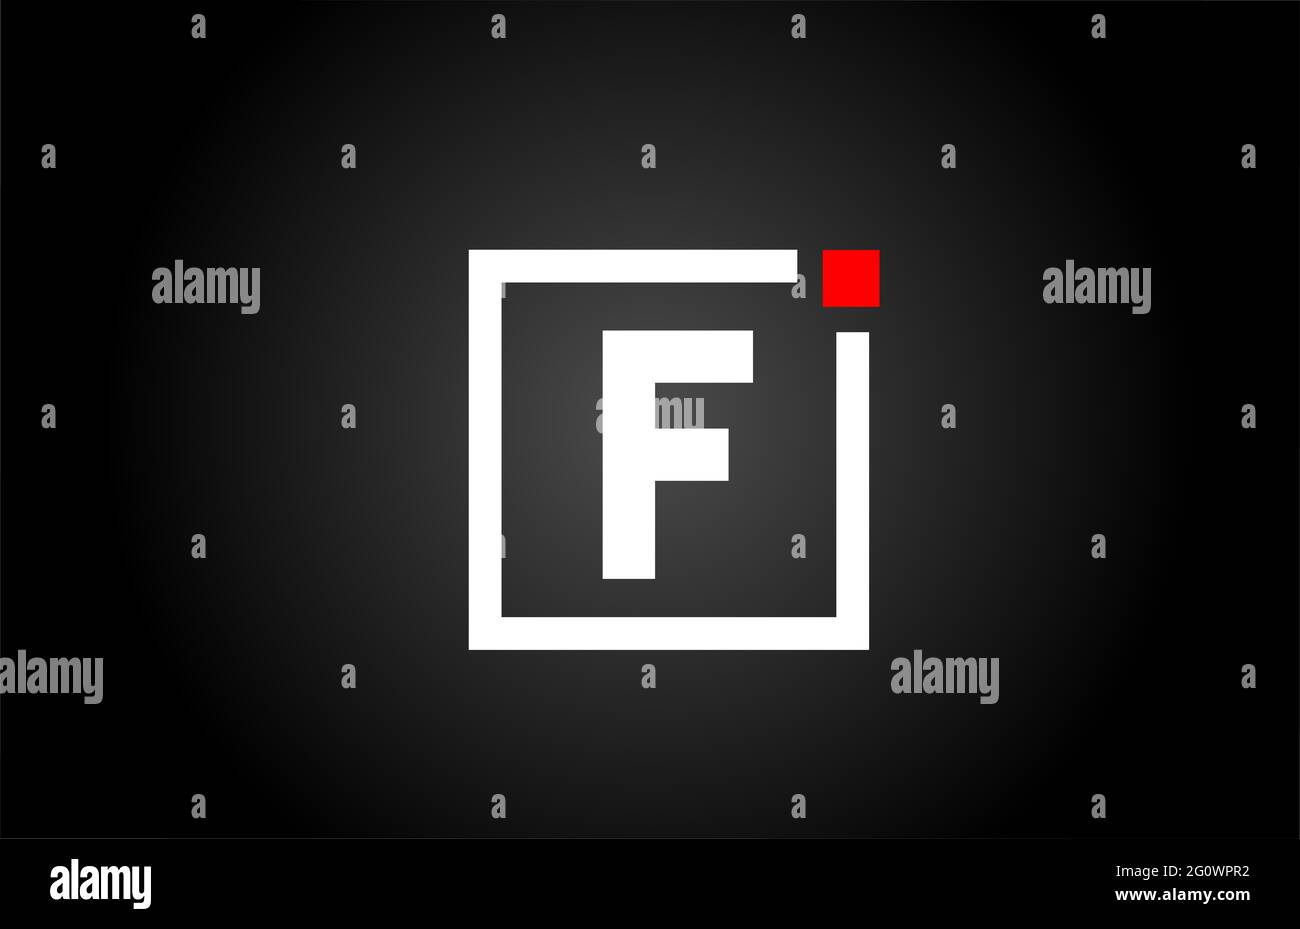 Logo dell'icona lettera dell'alfabeto F in bianco e nero. Design aziendale e aziendale con punto quadrato e rosso. Modello di identità aziendale creativa Foto Stock